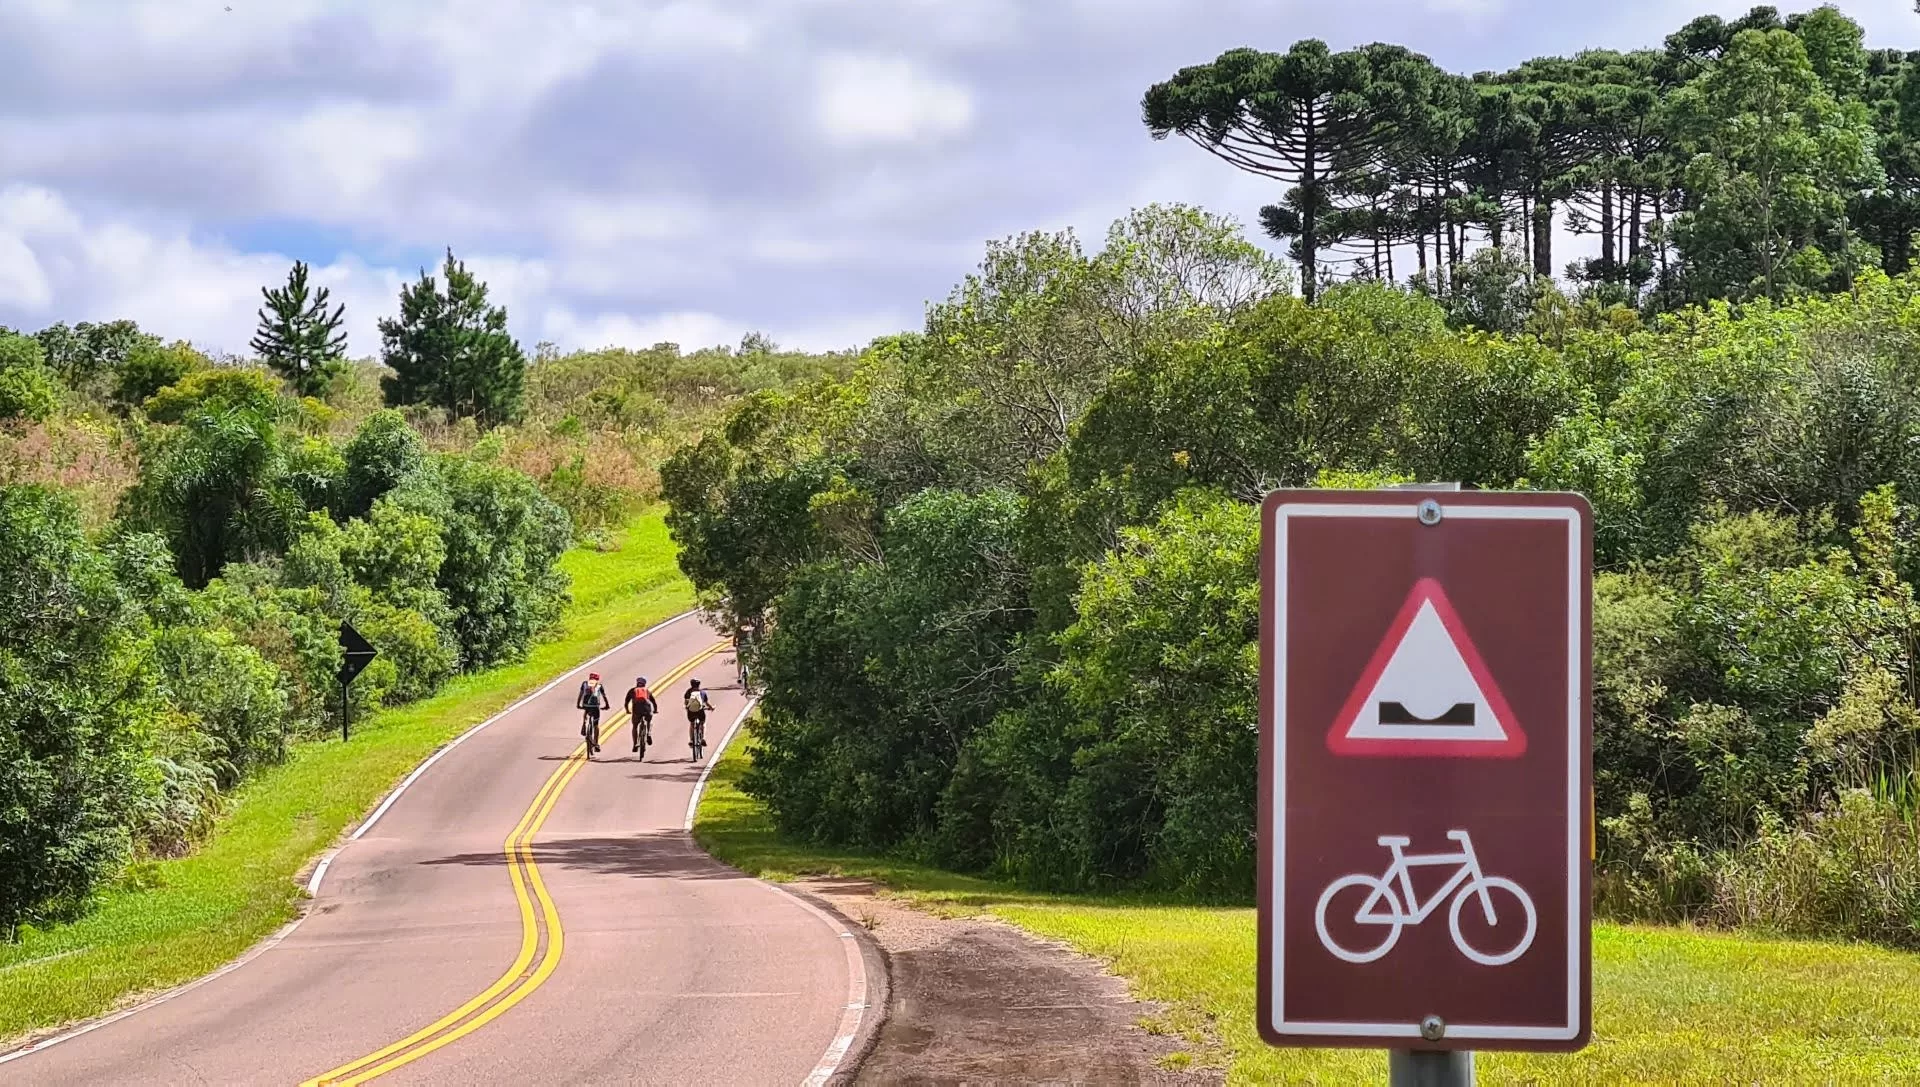 Cicloturismo autoguiado desenvolvido no Parque Vila velha é um exemplo de como criar rotas e circuitos de cicloturismo.